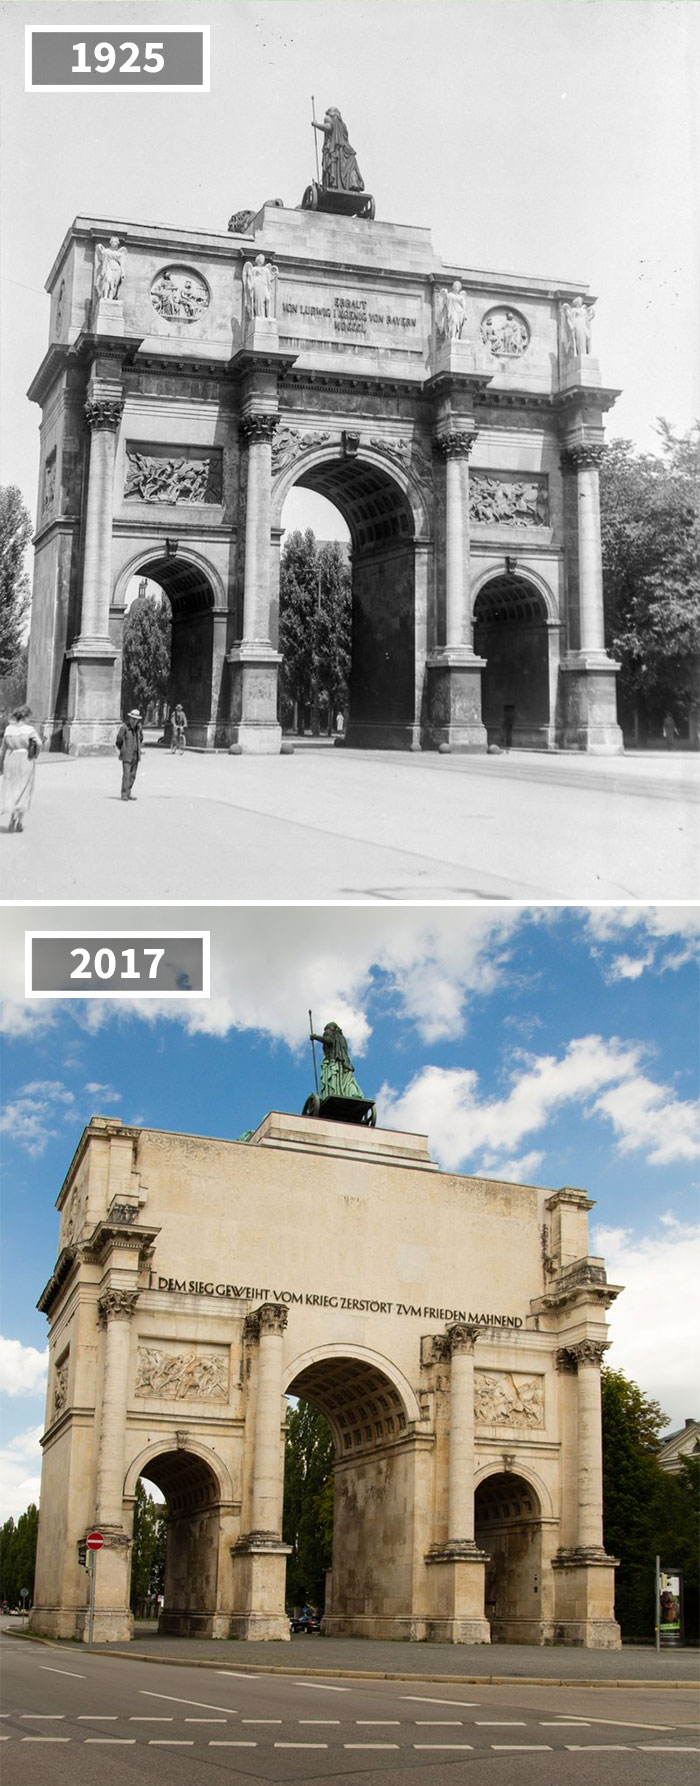 Victory Gate, Munich, Germany, 1925 - 2017